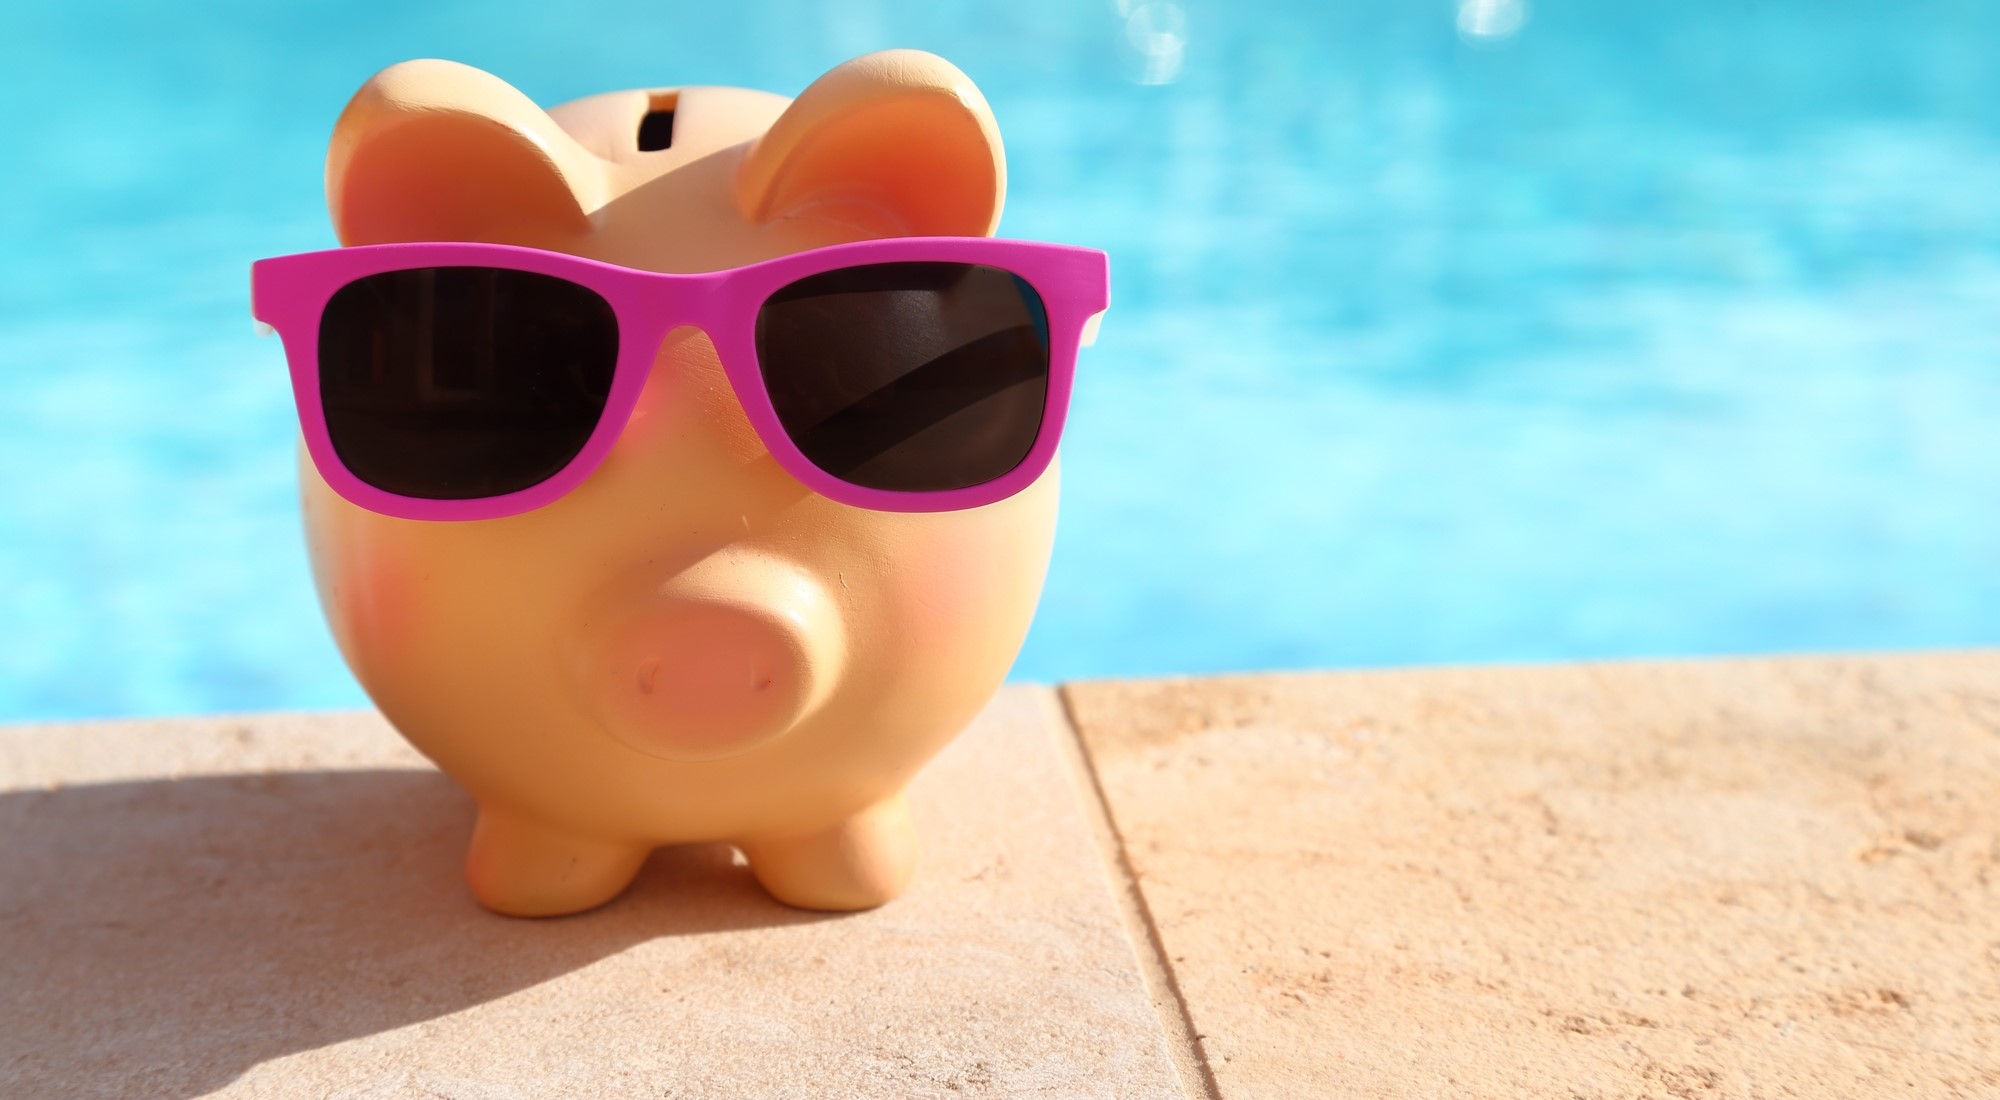 oportunidad de negocio: prepare la piscina de su cliente para el verano